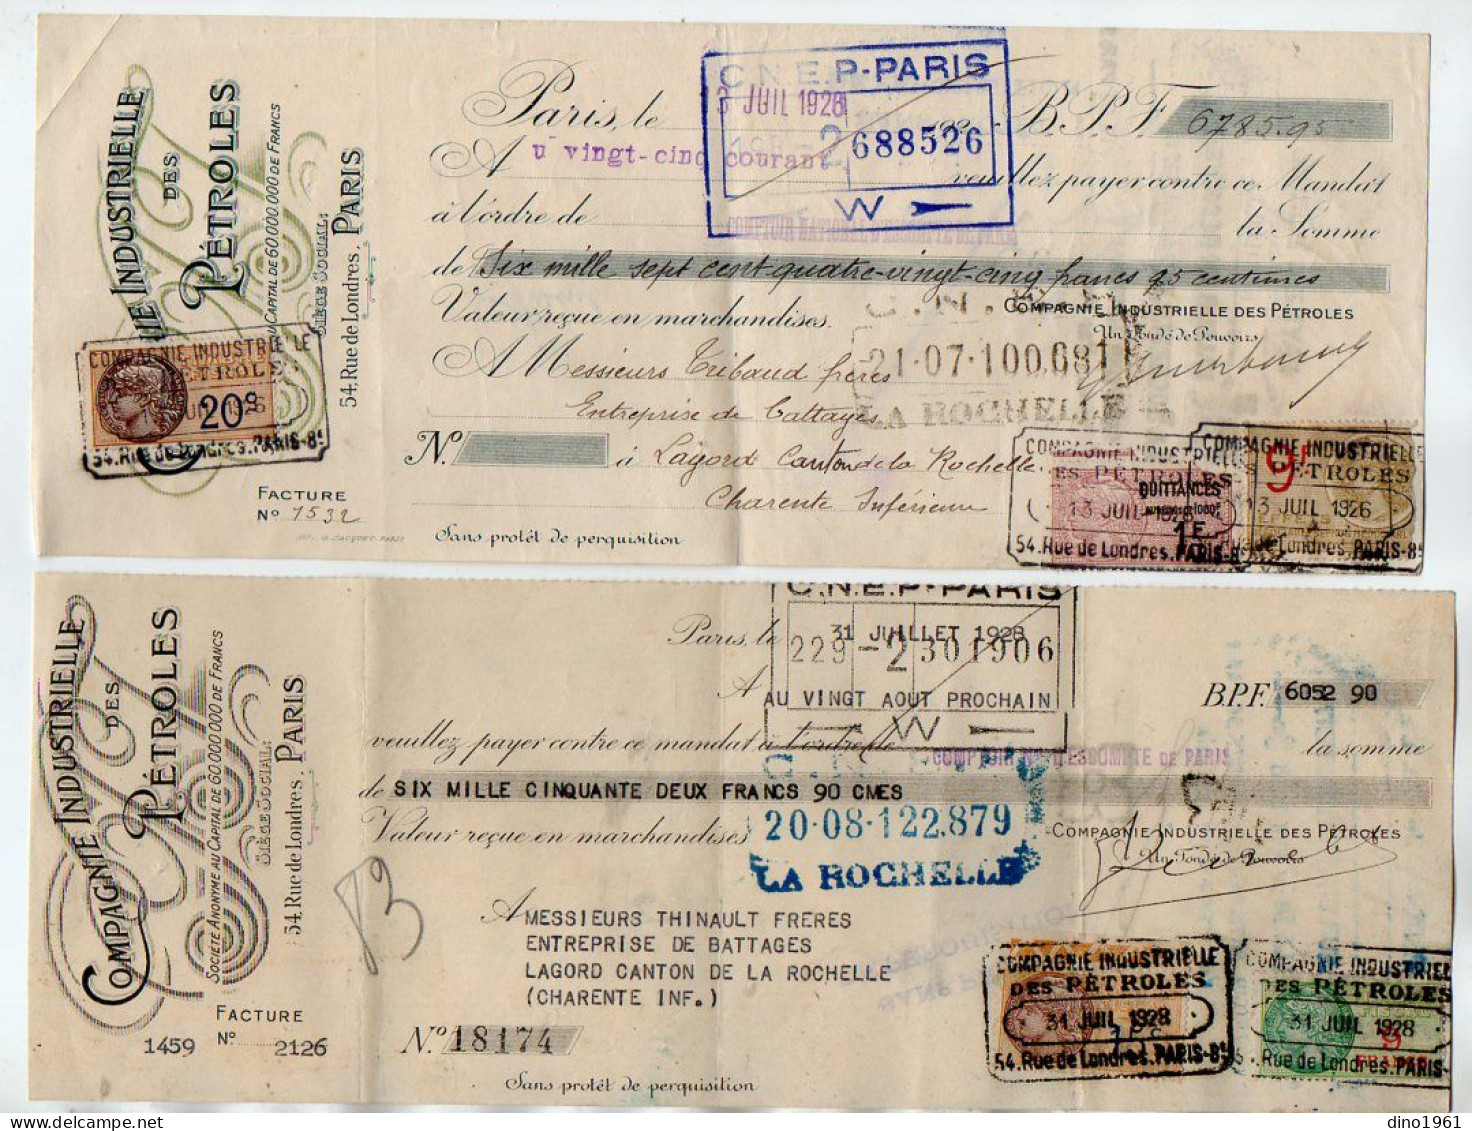 VP22.241 - 1926 / 28 - Lettre De Change - Compagnie Industrielle Des Pétroles à PARIS - Wechsel